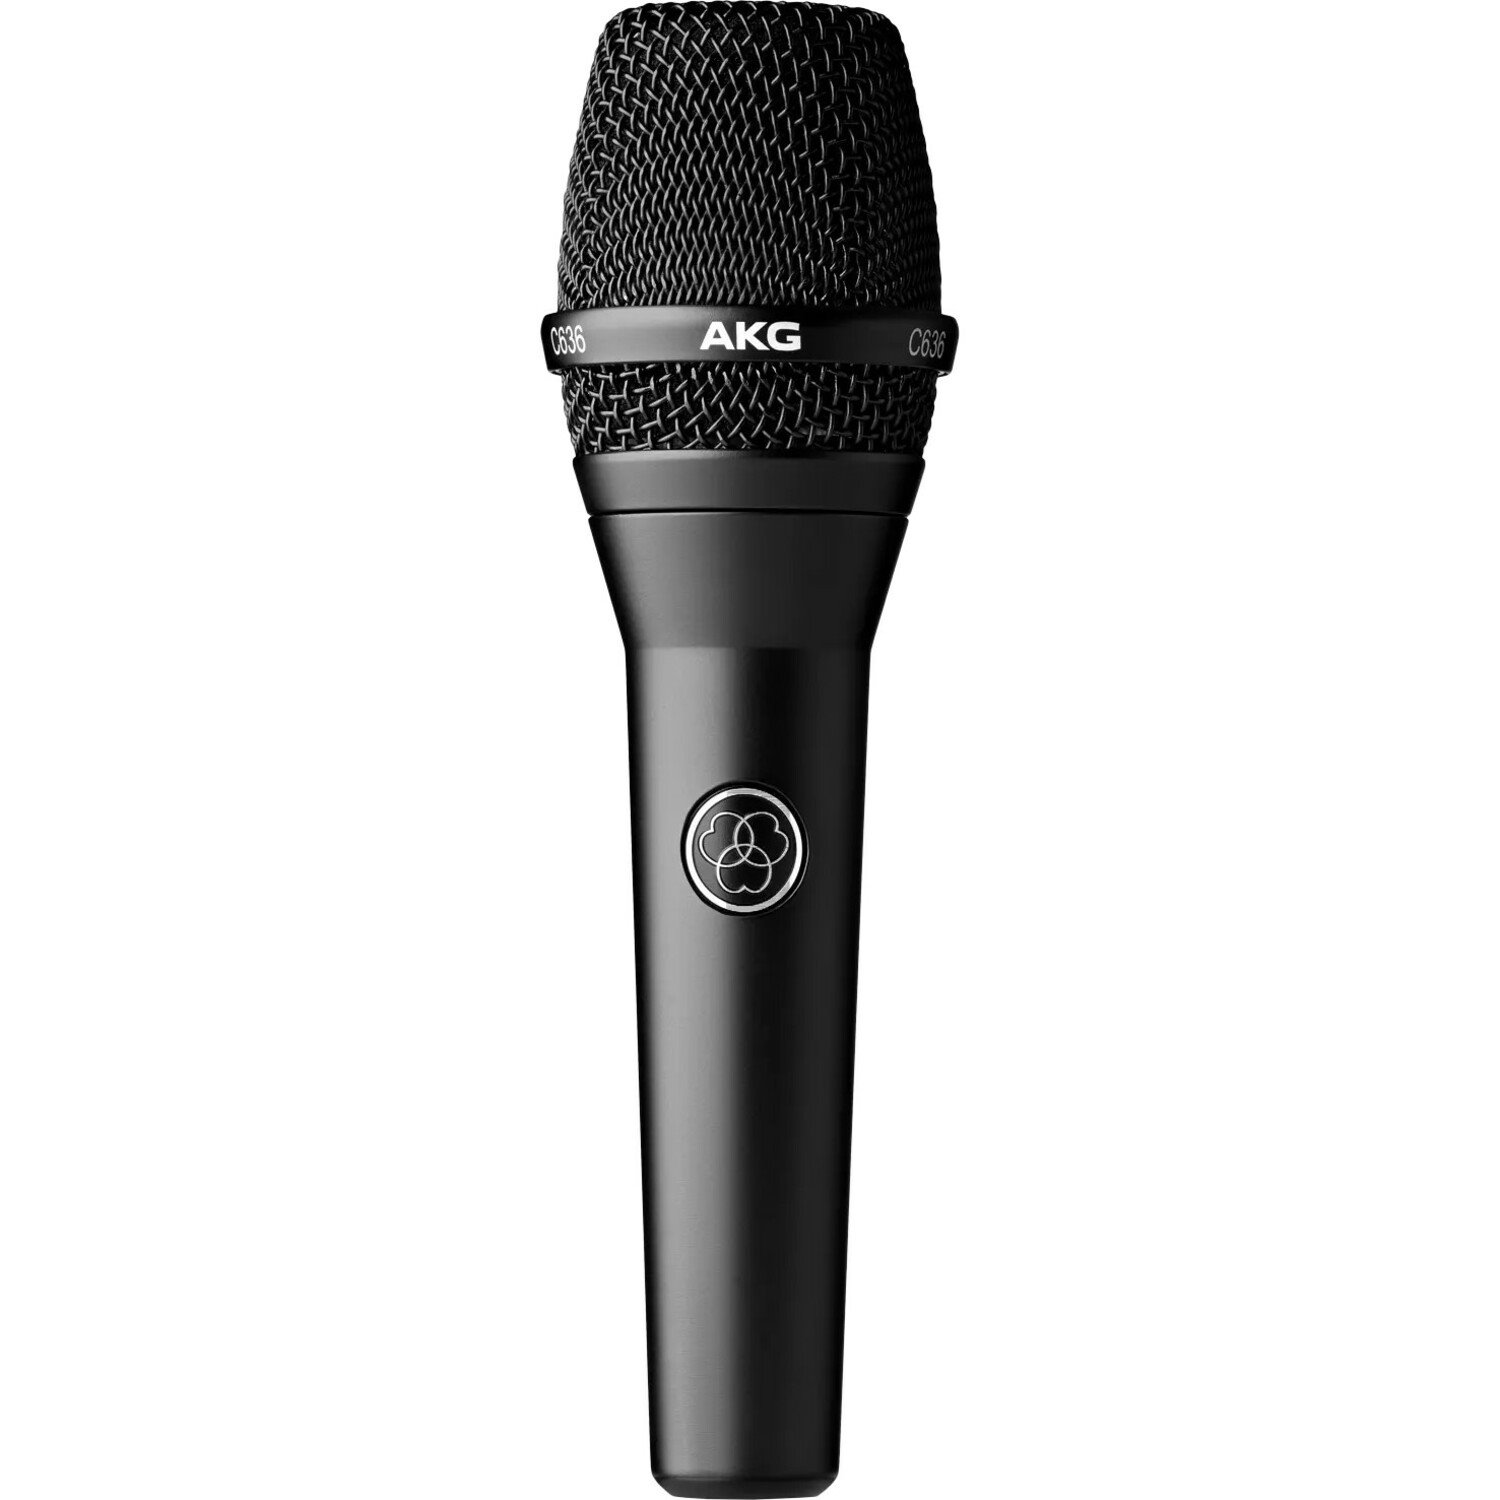 AKG C636 Rugged Wired Condenser Microphone - Matte Black